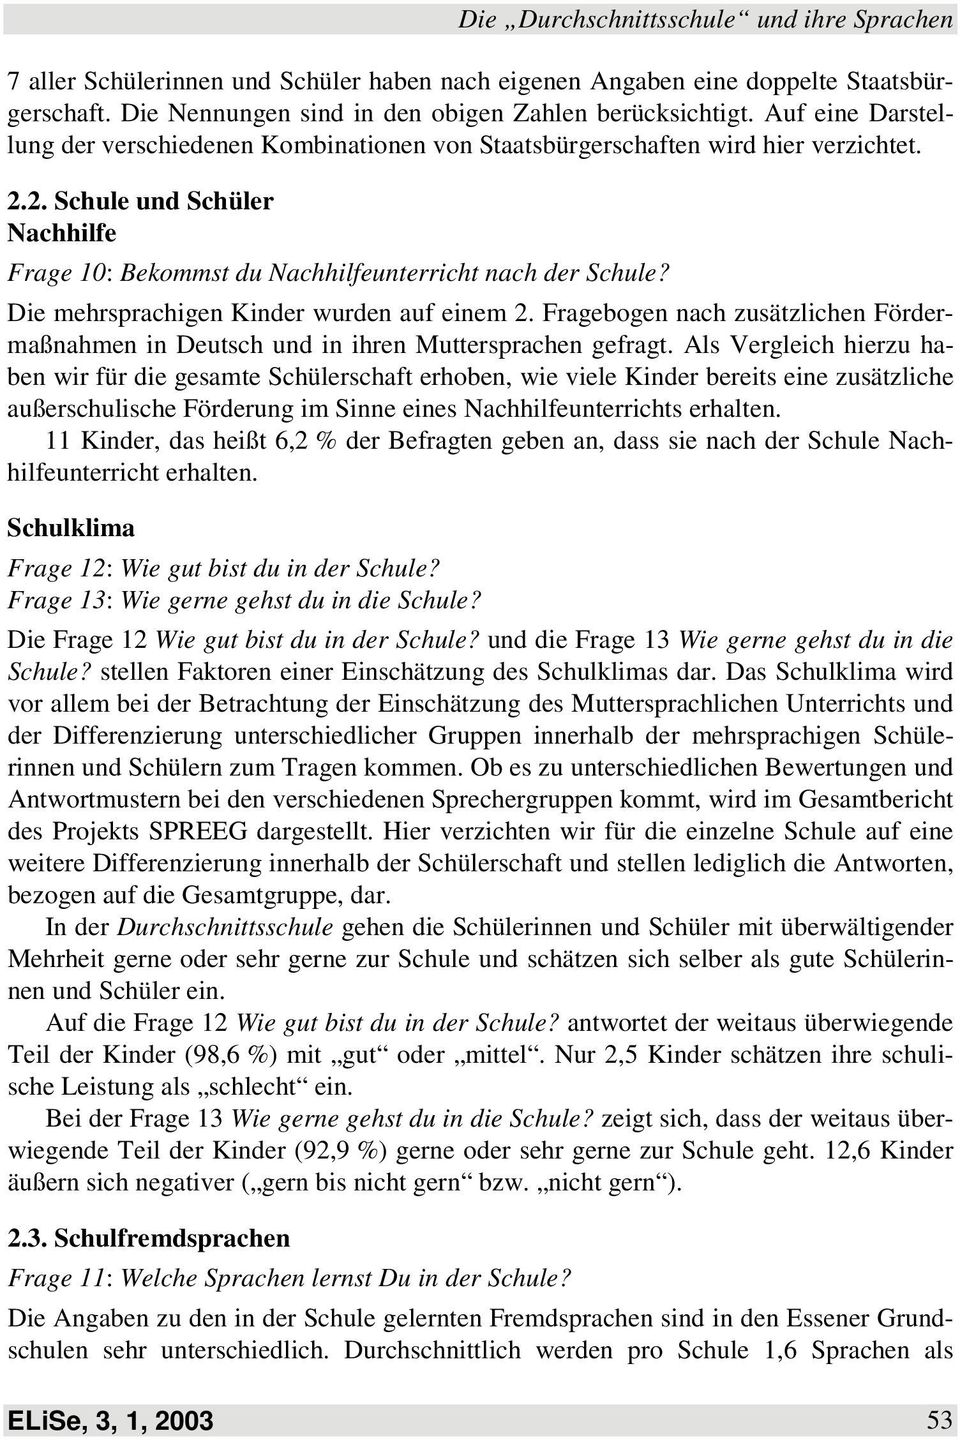 Die mehrsprachigen Kinder wurden auf einem 2. Fragebogen nach zusätzlichen Fördermaßnahmen in Deutsch und in ihren Muttersprachen gefragt.